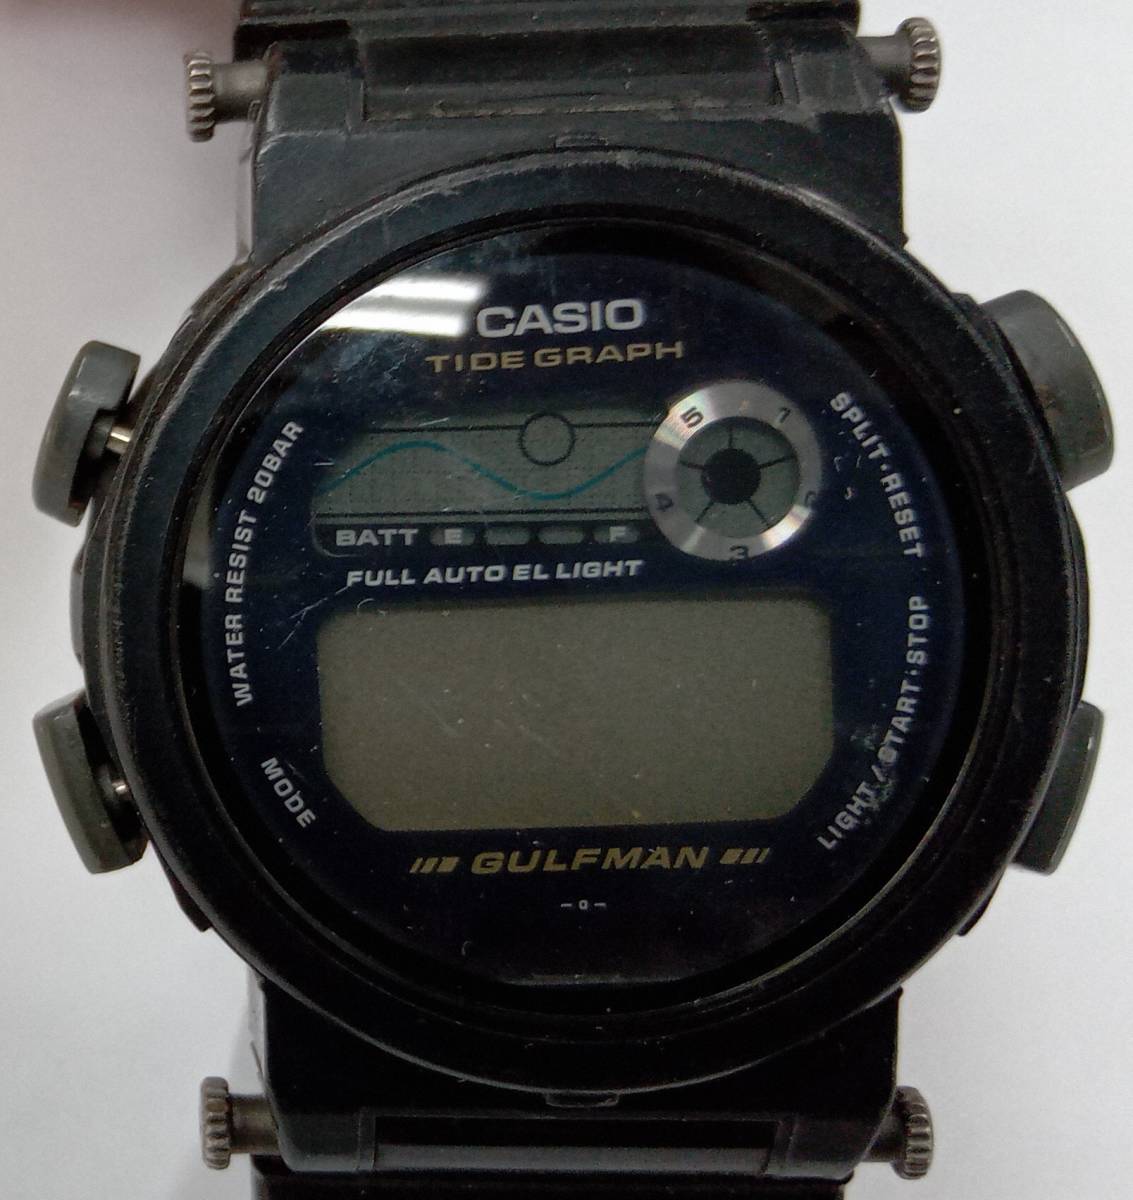  продаю как нерабочий    на работоспособность не проверялось  CASIO  casio   G-SHOCK ... аммортизаторы  DW-9700  кварцевый   наручные часы   кейс  нет   оборотная сторона  крышка  1шт.   винт  нет 